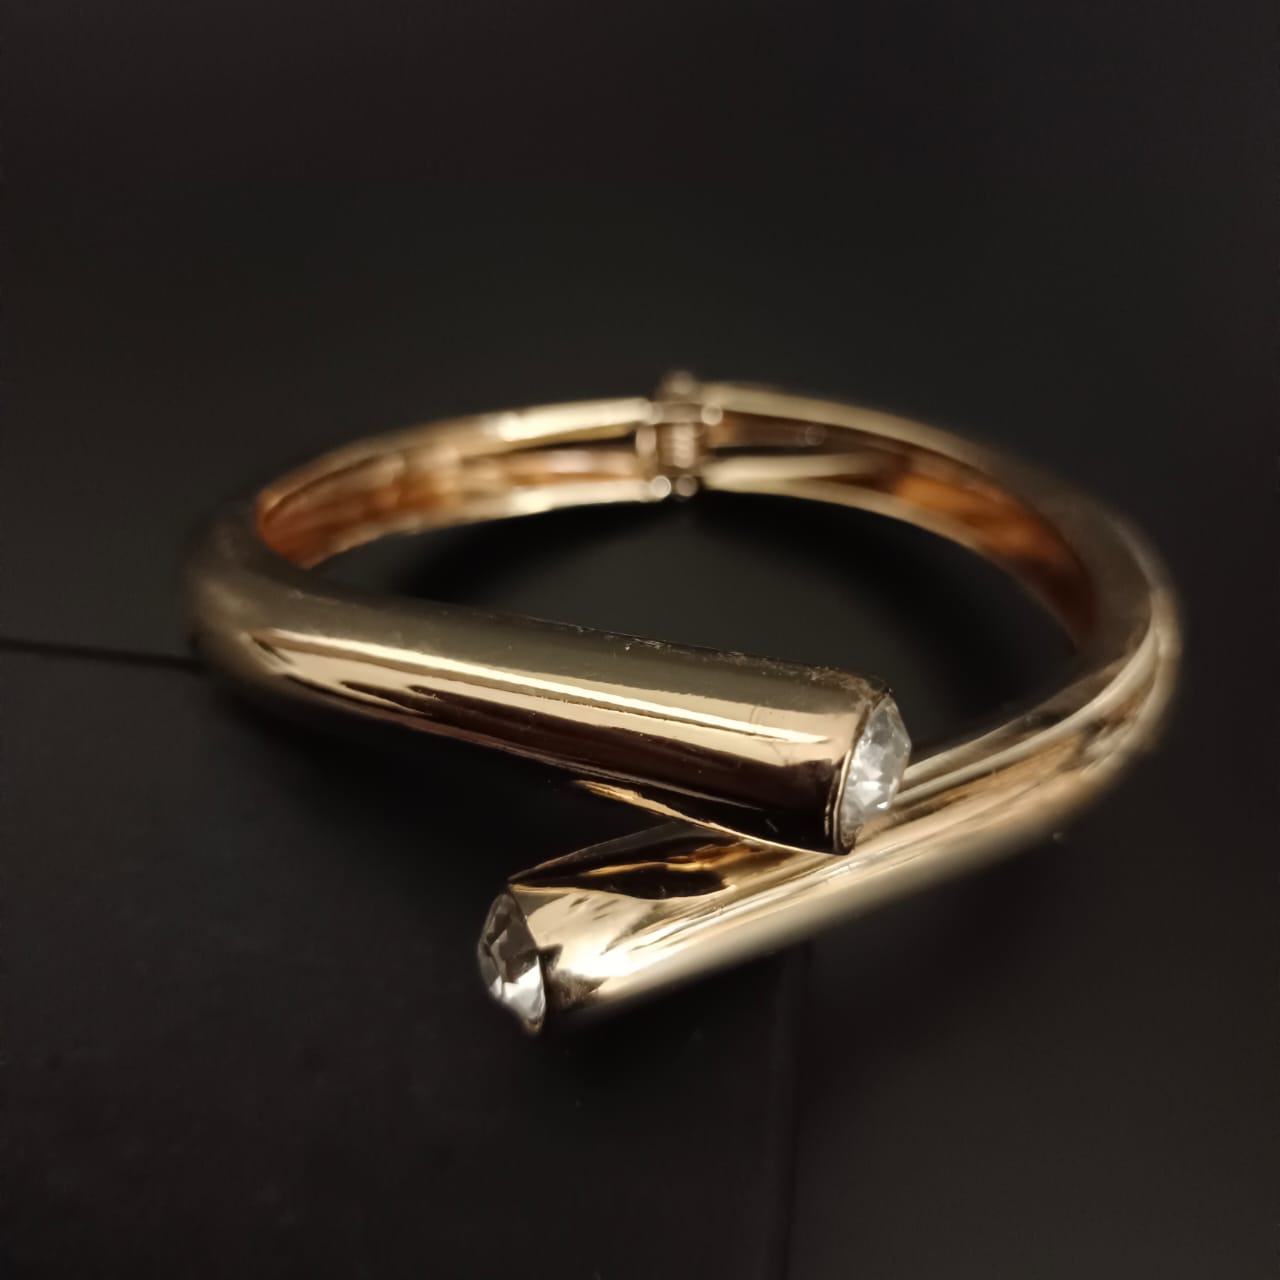 New Golden Twisted Design Bracelet For Women and Girl-